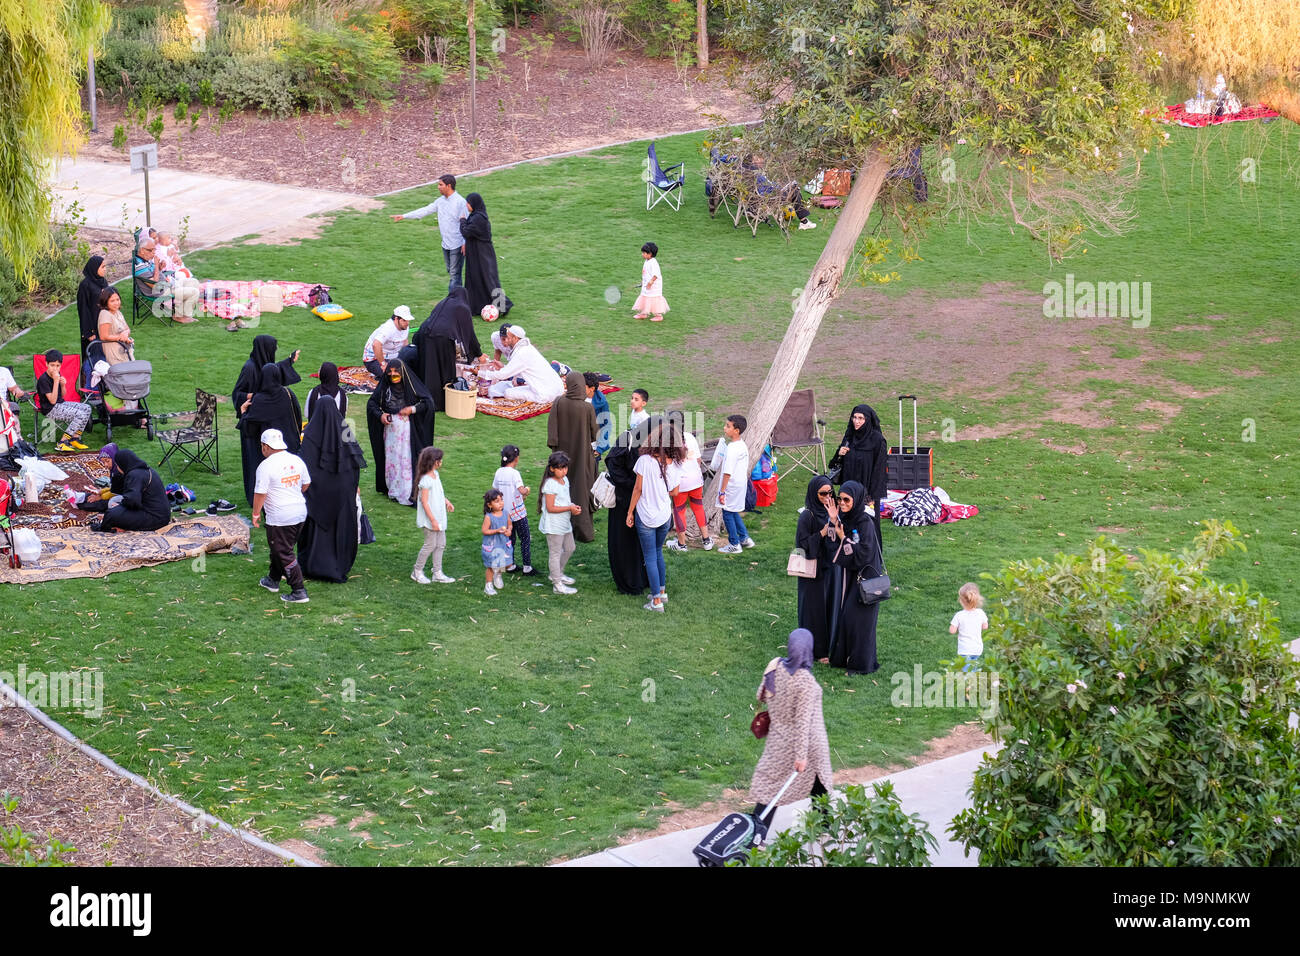 Outdoor Familie Picknick, muslimisch-arabischen Familien genießen outdoor Aktivitäten bei Umm Al Emarat Park, Abu Dhabi, VAE. Stockfoto